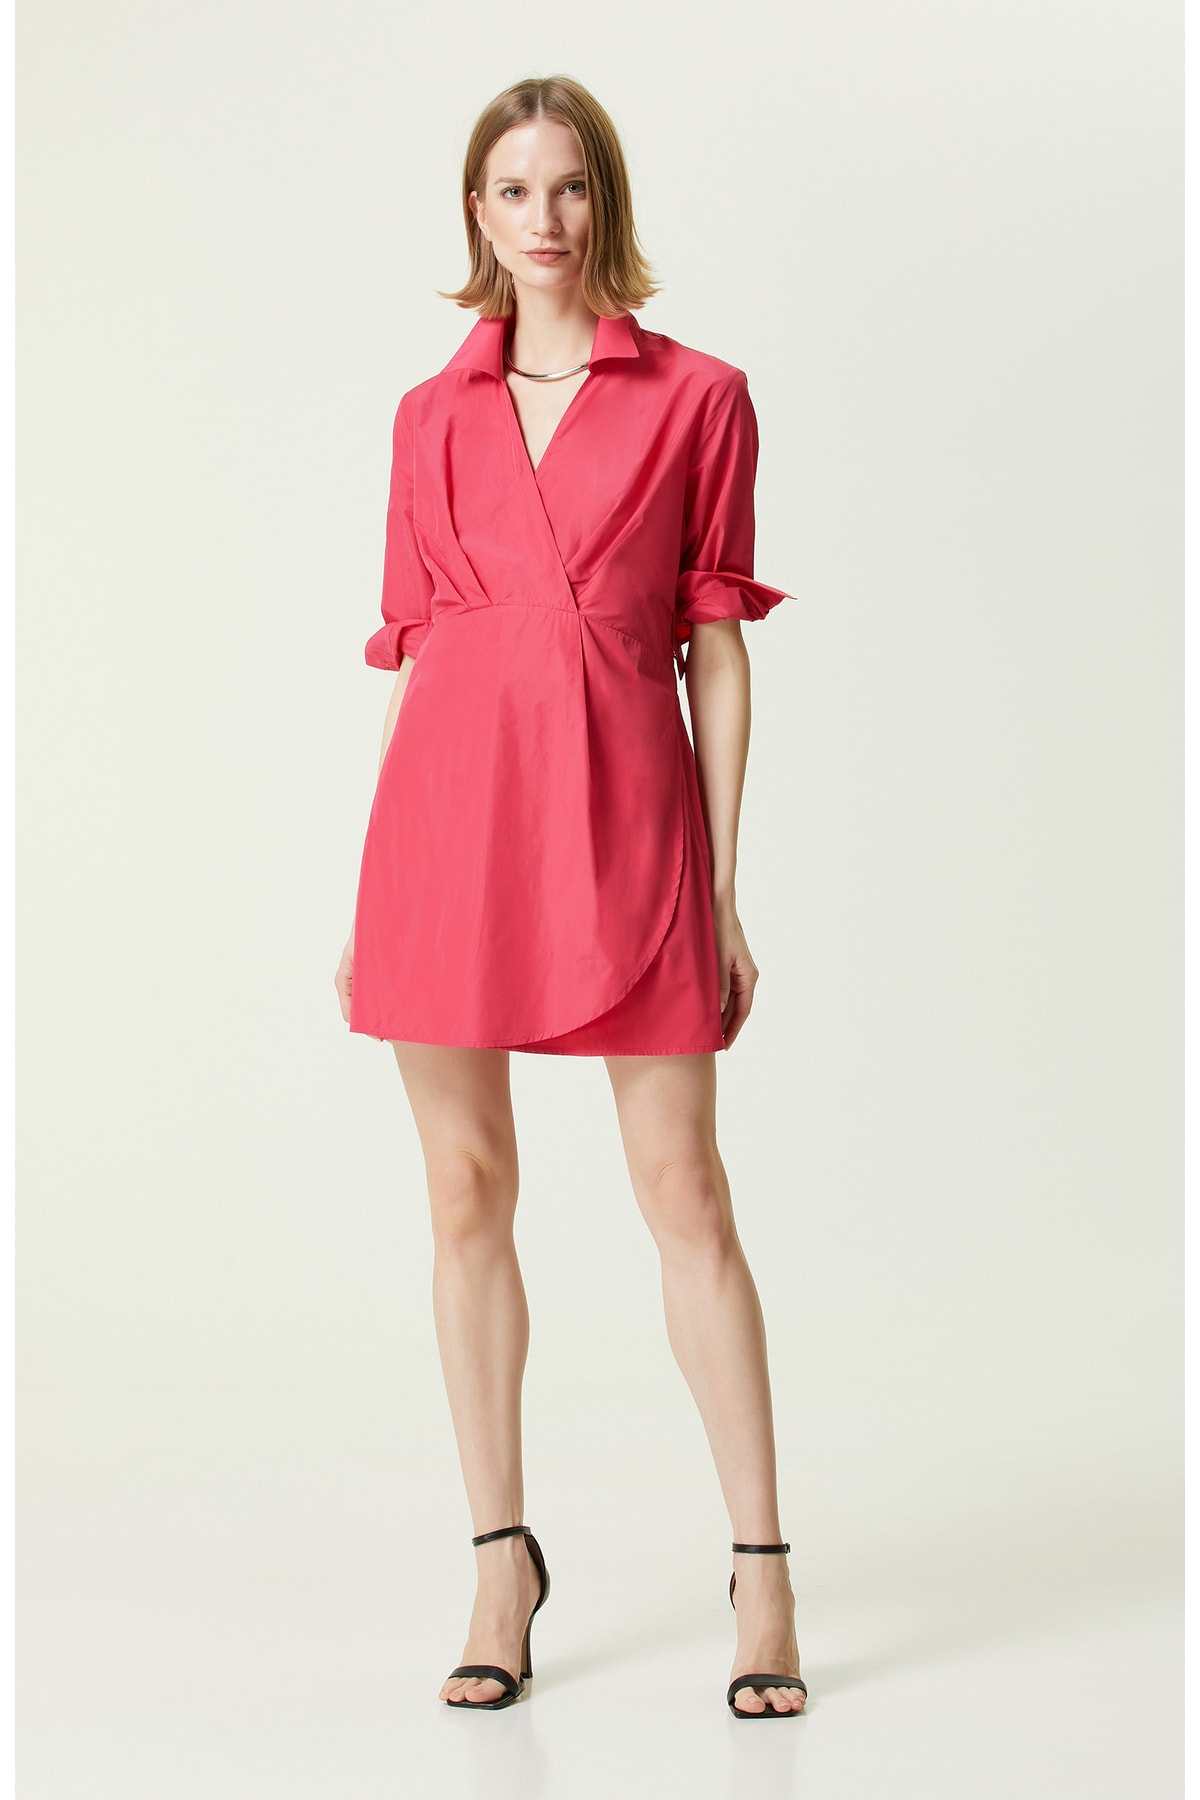 Платье с длинным рукавом и воротником-рубашкой цвета фуксии Network, розовый мини платье цвета фуксии network